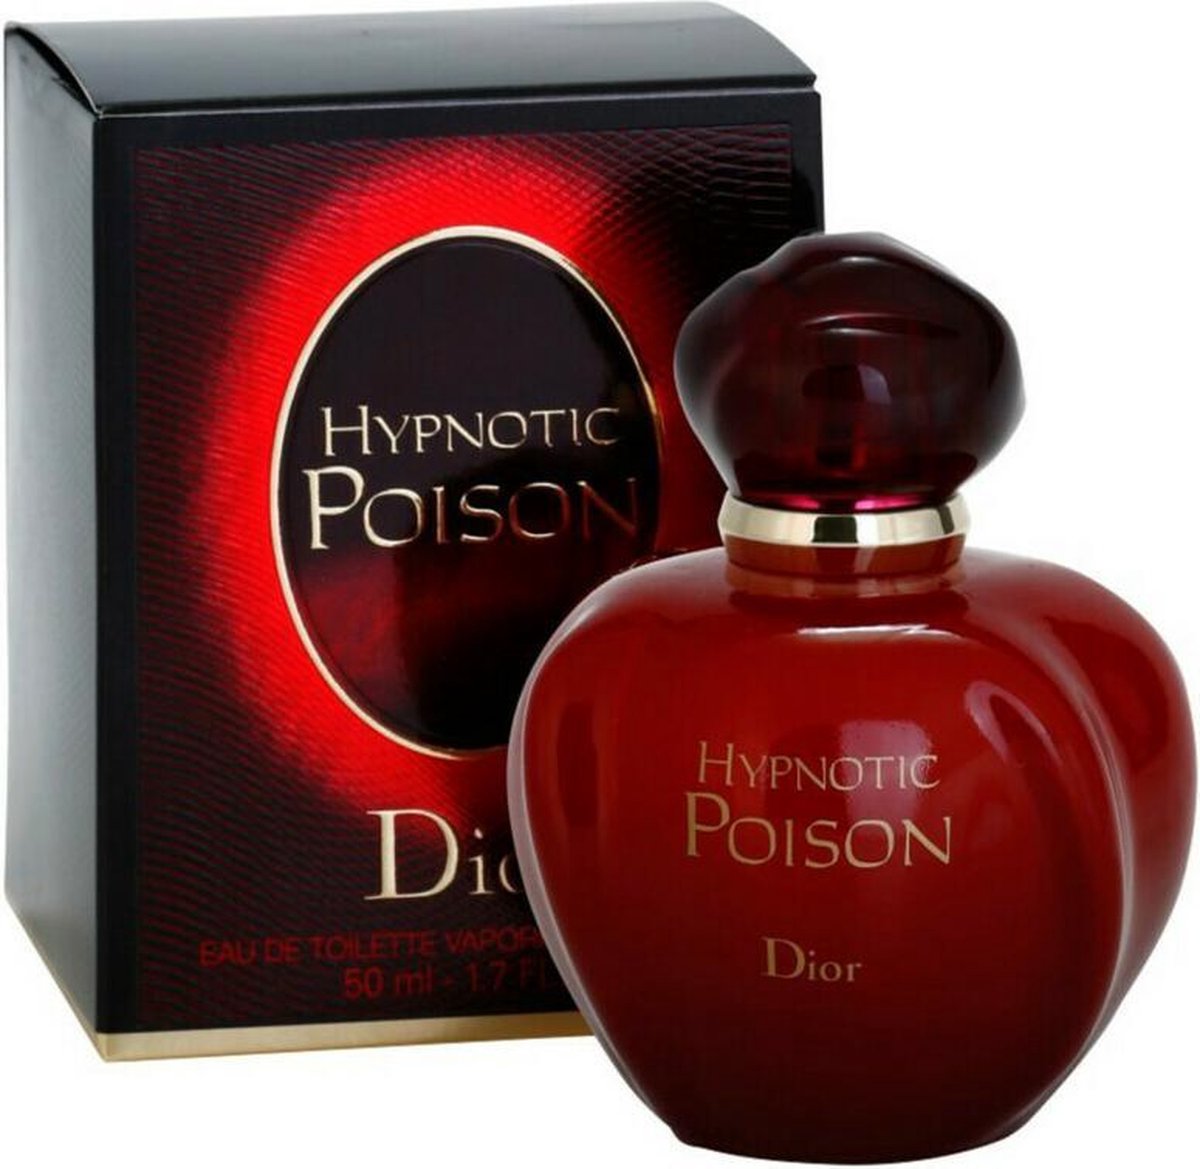 Gloed gloeilamp wakker worden Dior Hypnotic Poison 50 ml - Eau de Toilette - Damesparfum | bol.com